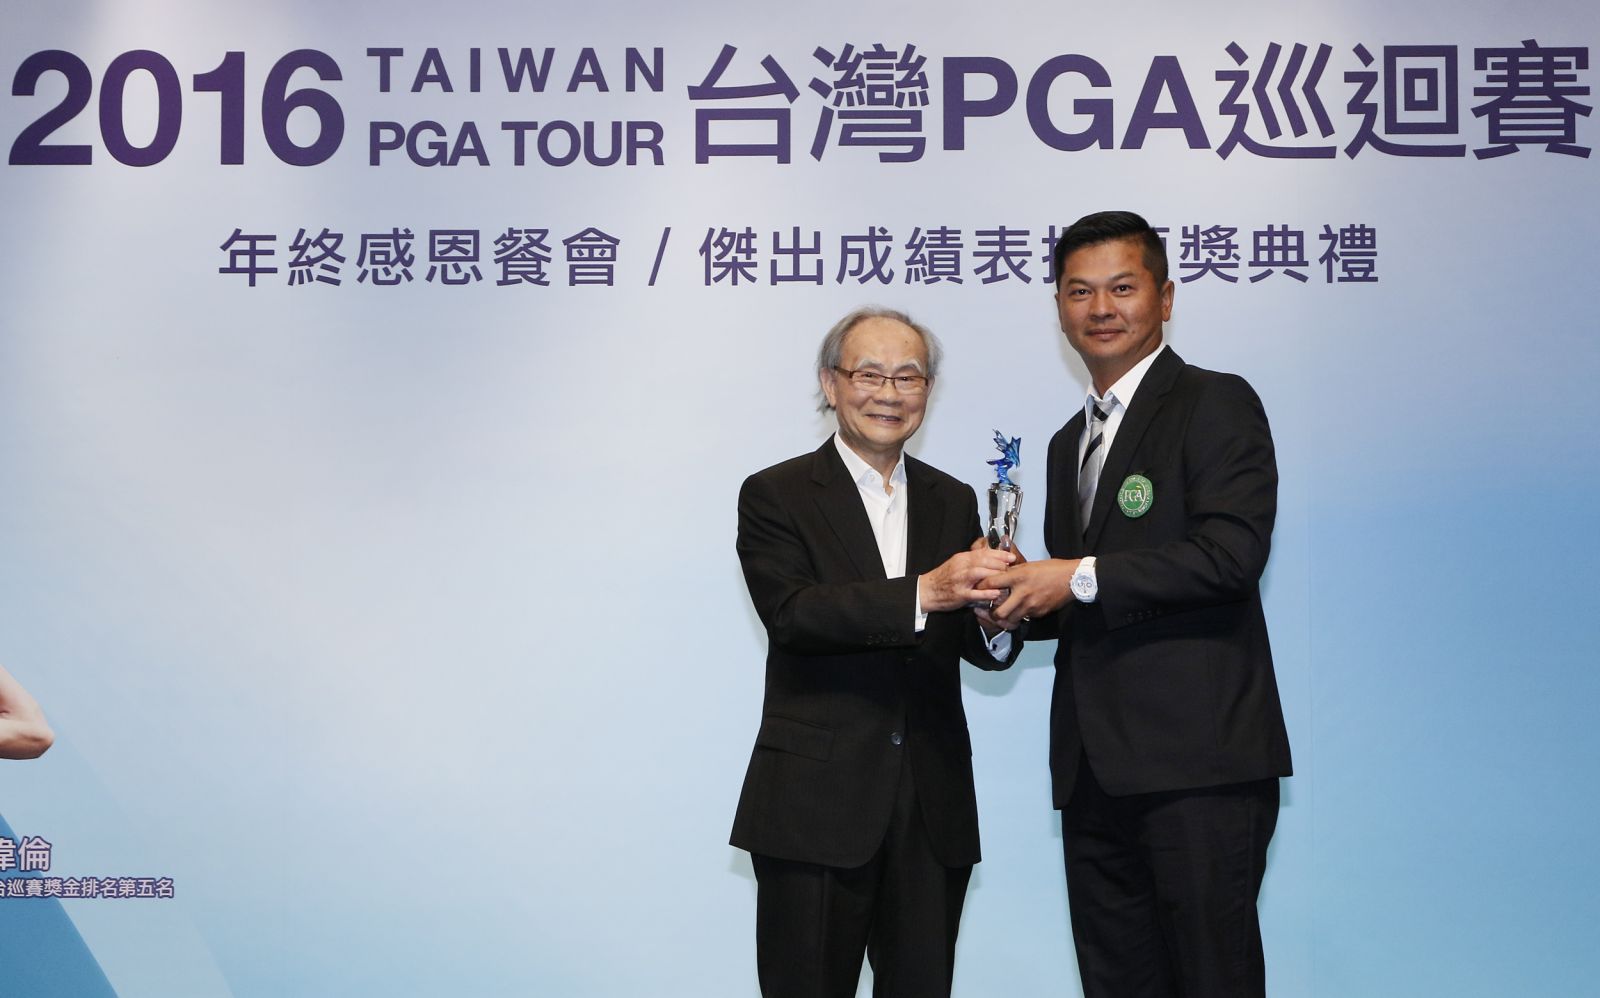 三花棉業董事長施純鎰(左)頒發老鷹獎獎盃給林文堂。